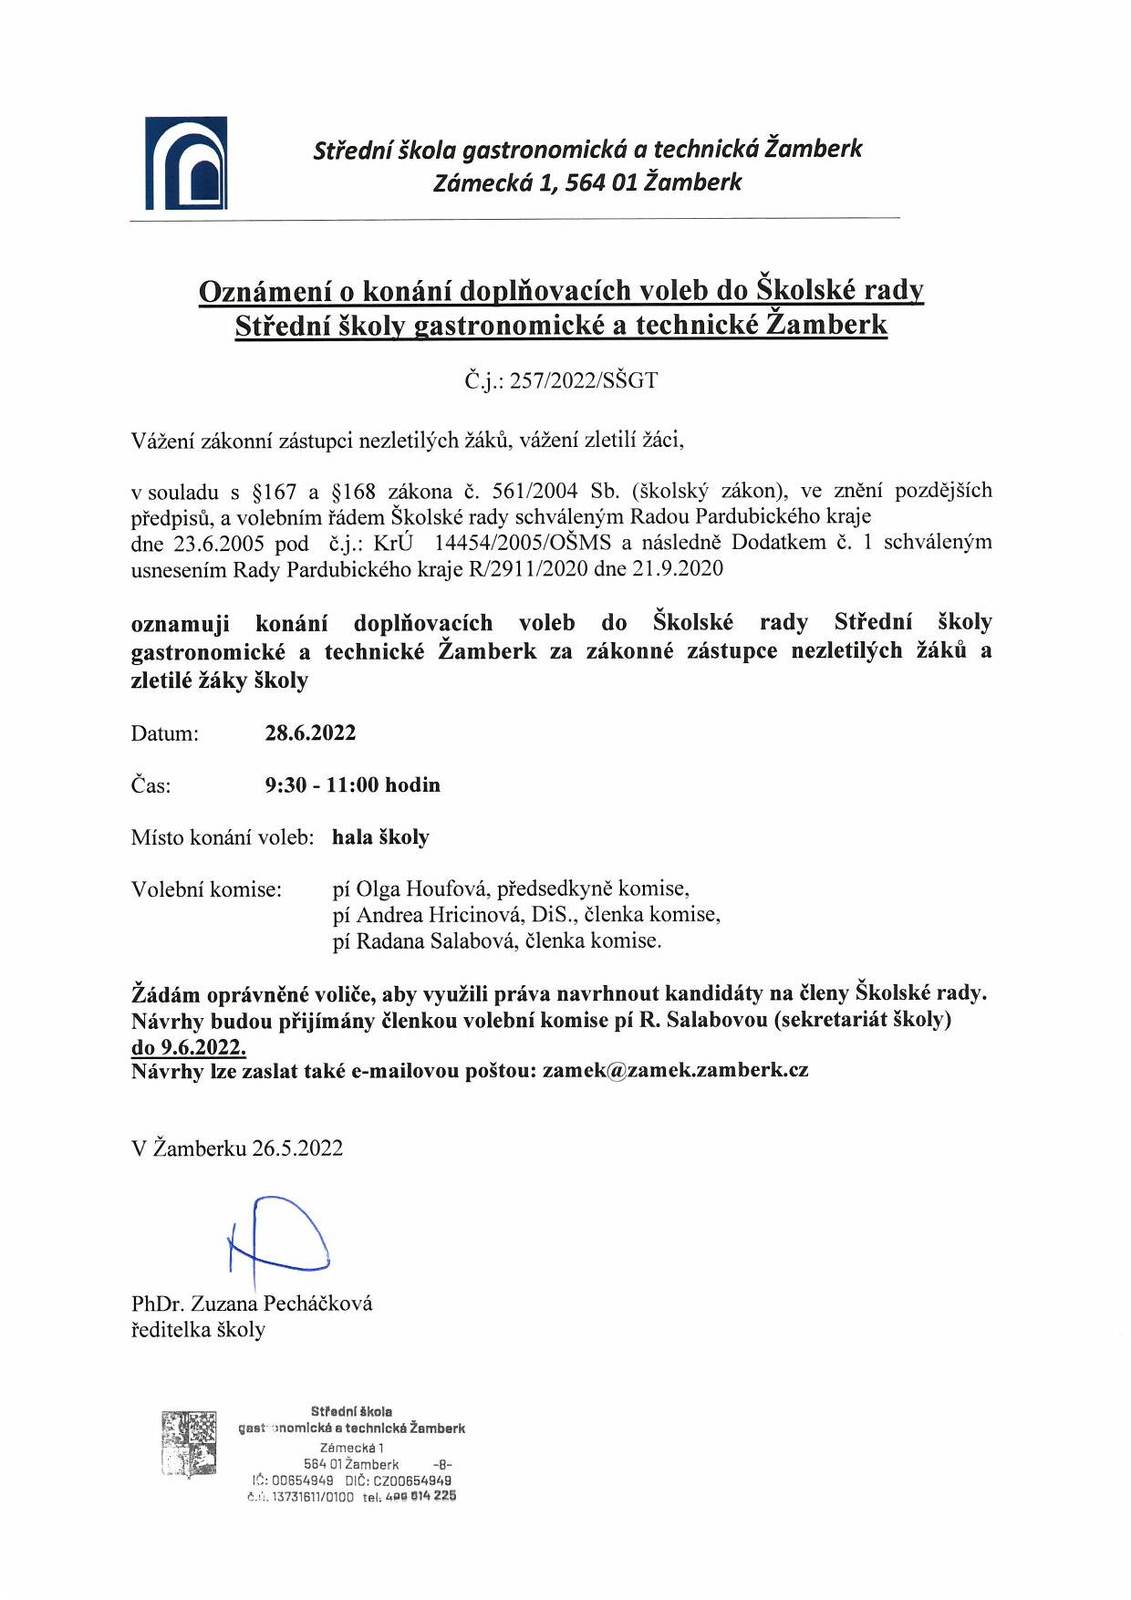 Oznámení o konání doplňovacích voleb do Školské rady SŠGT Žamberk.jpg